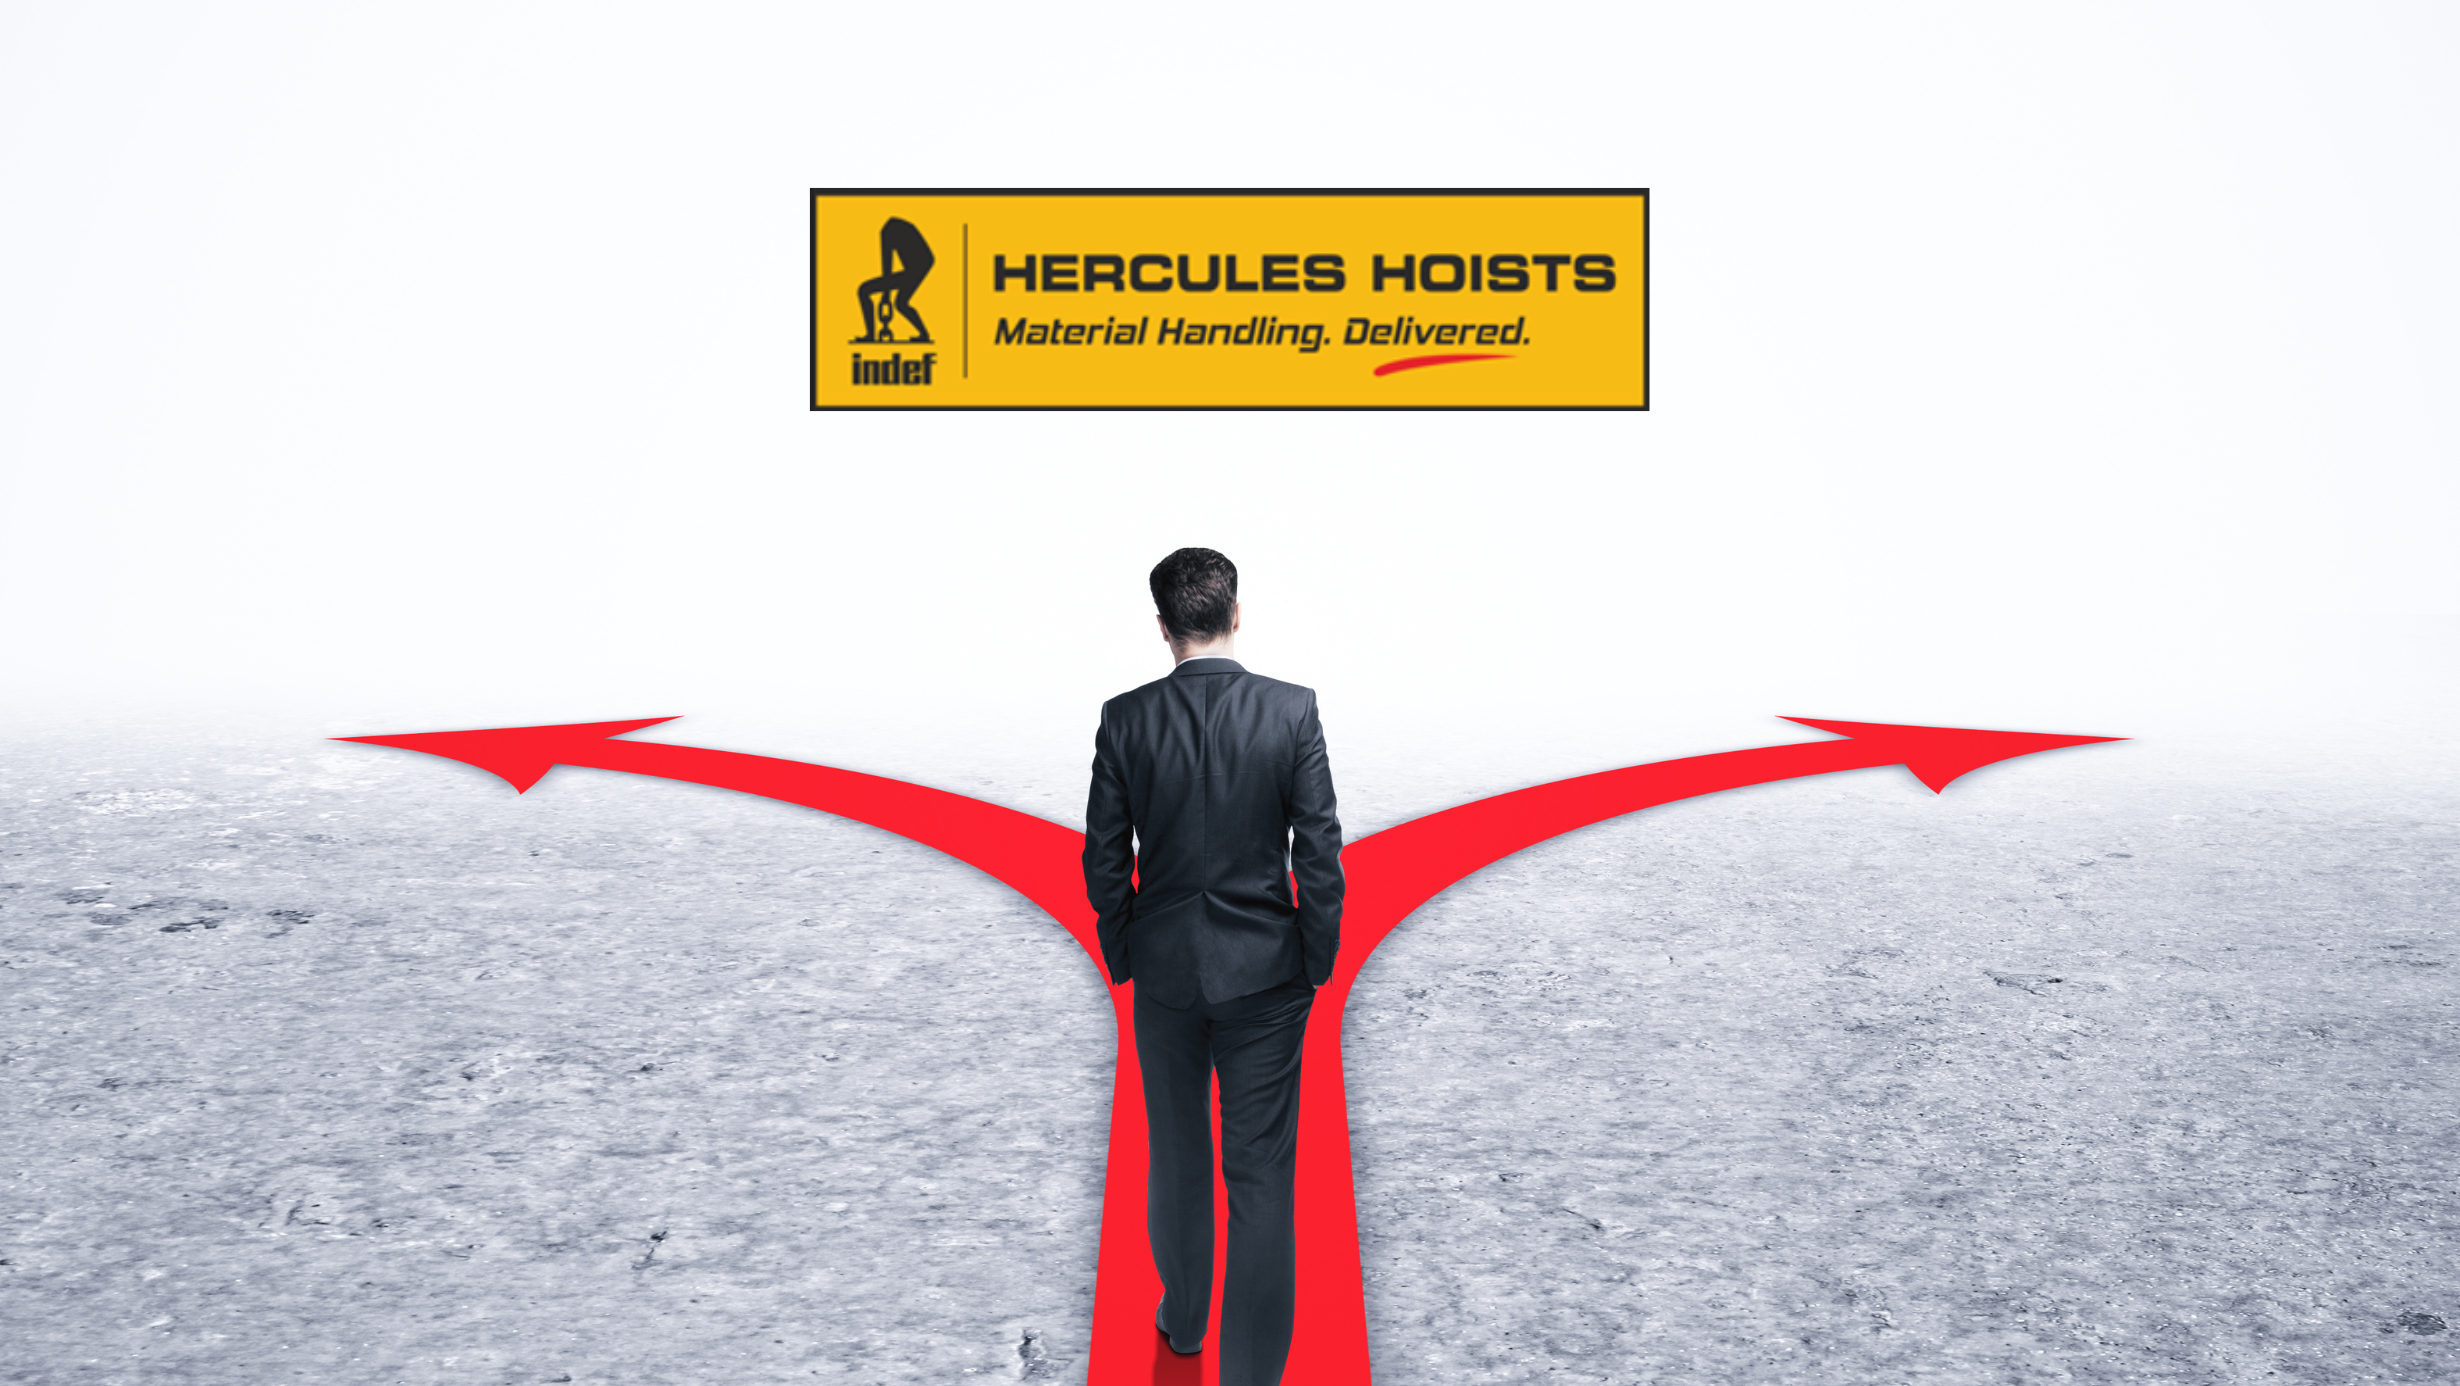 Hercules-Hoists-Index-Demerger-Business